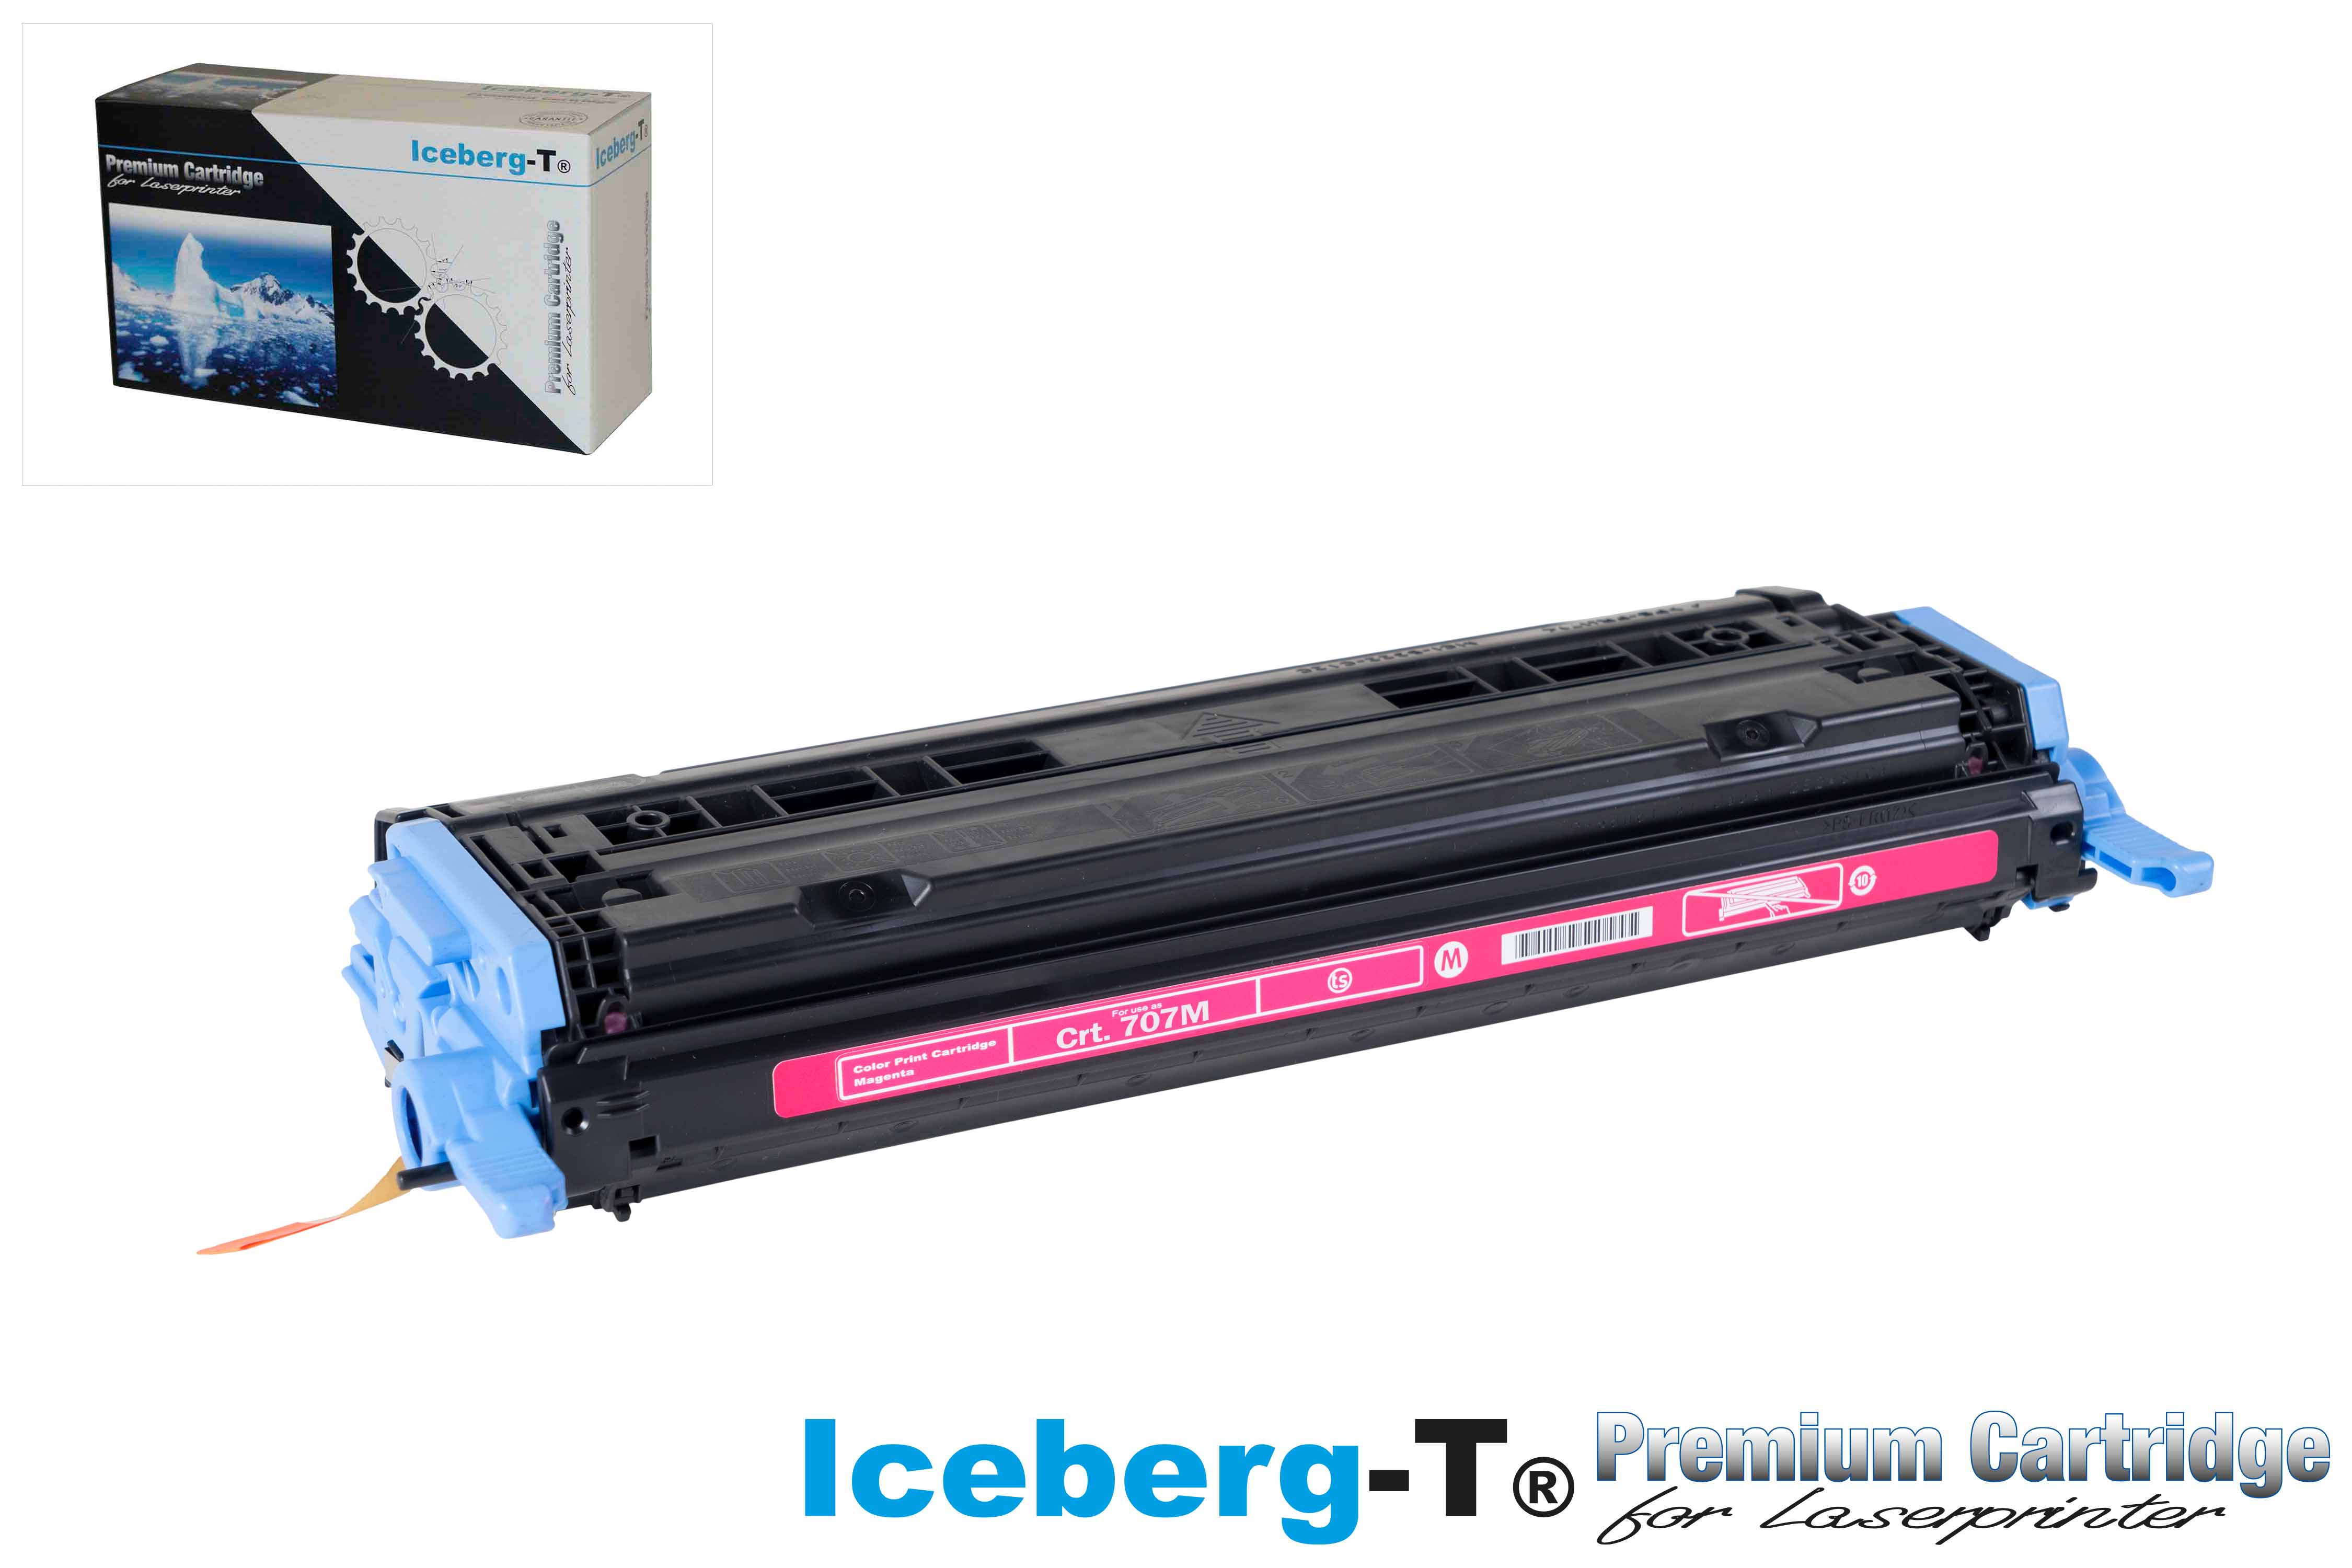 Iceberg-T Toner Crt. 707M 2'000 Seiten, magenta